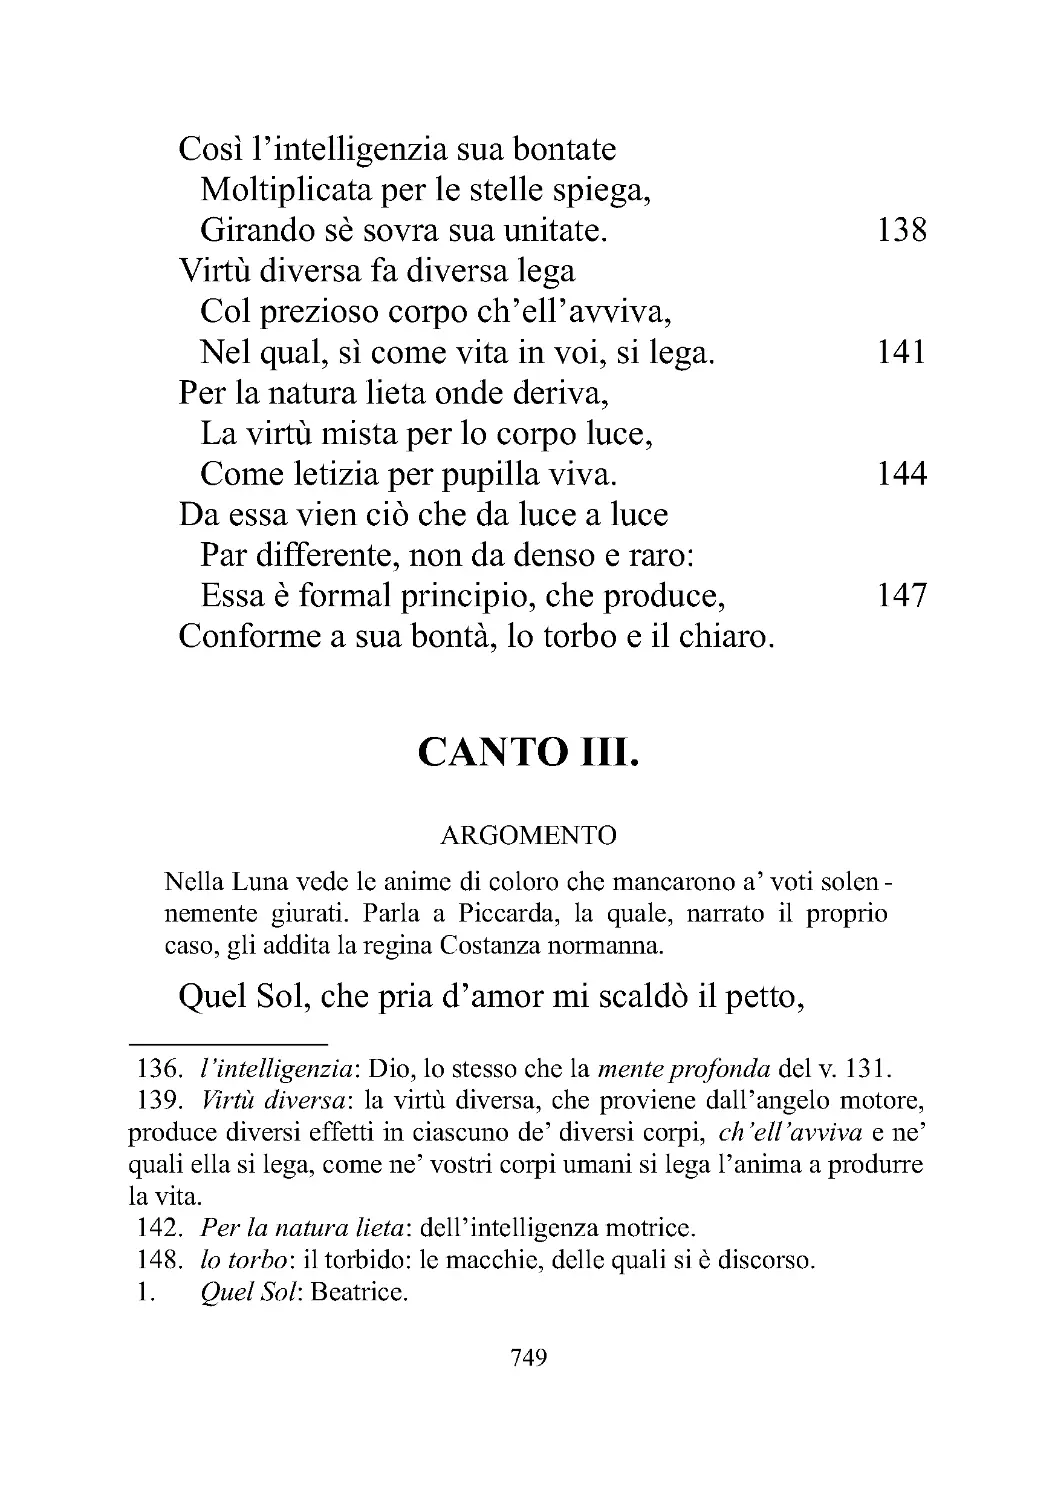 CANTO III.